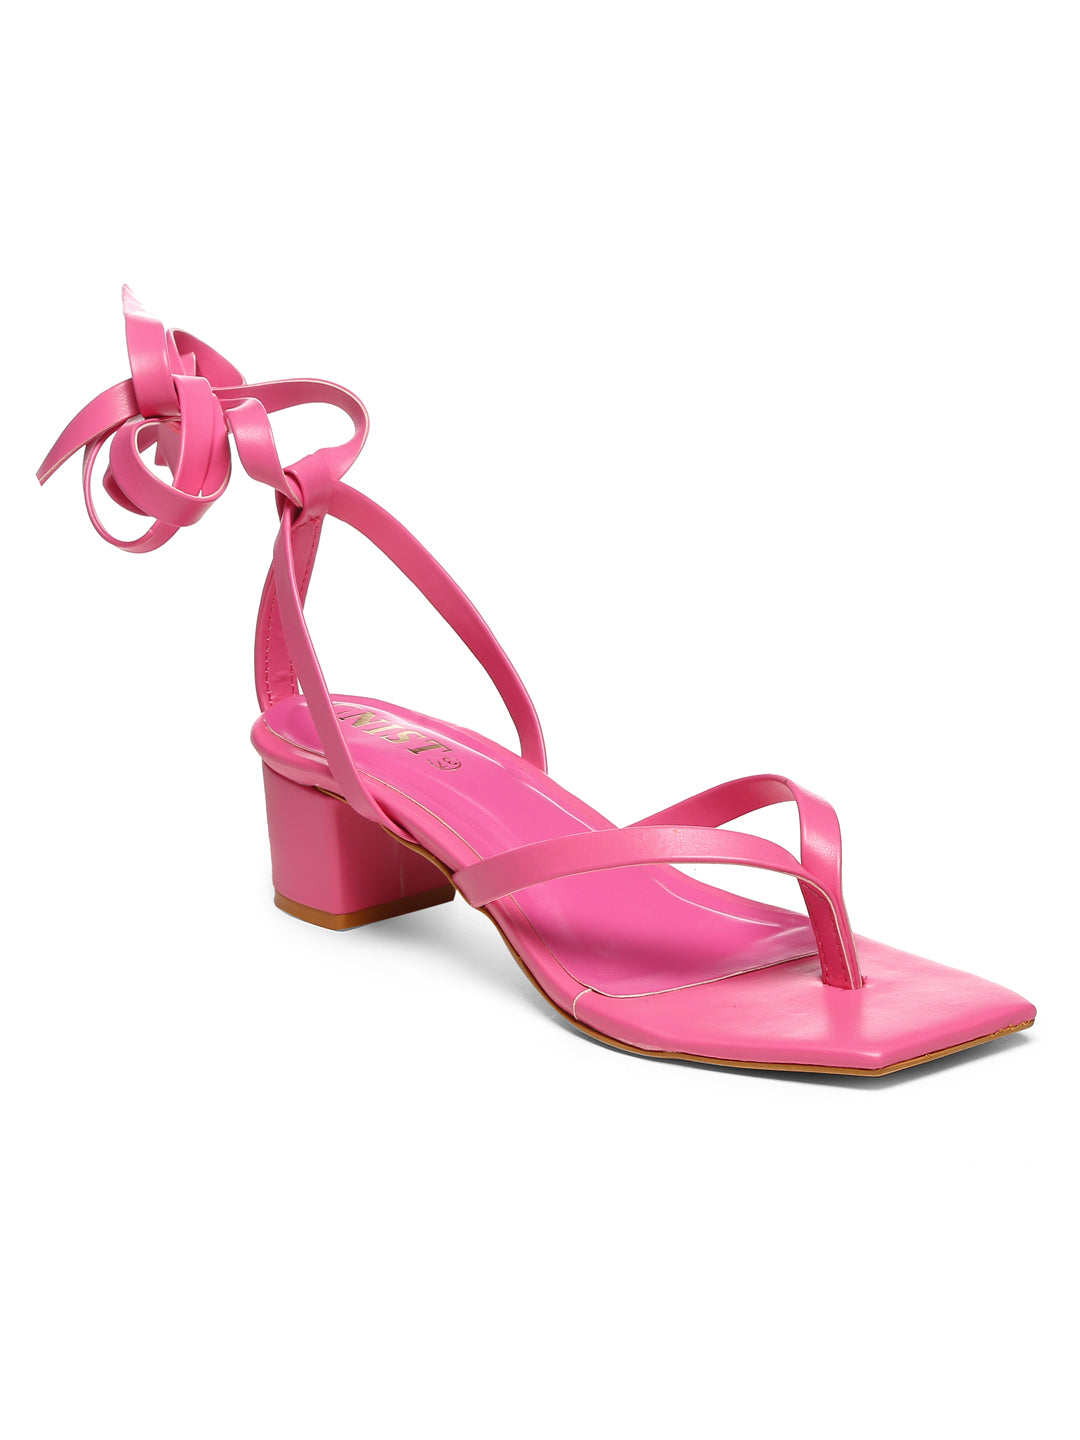 GNIST Hot Pink Trendy Tie up Block Heel Sandal